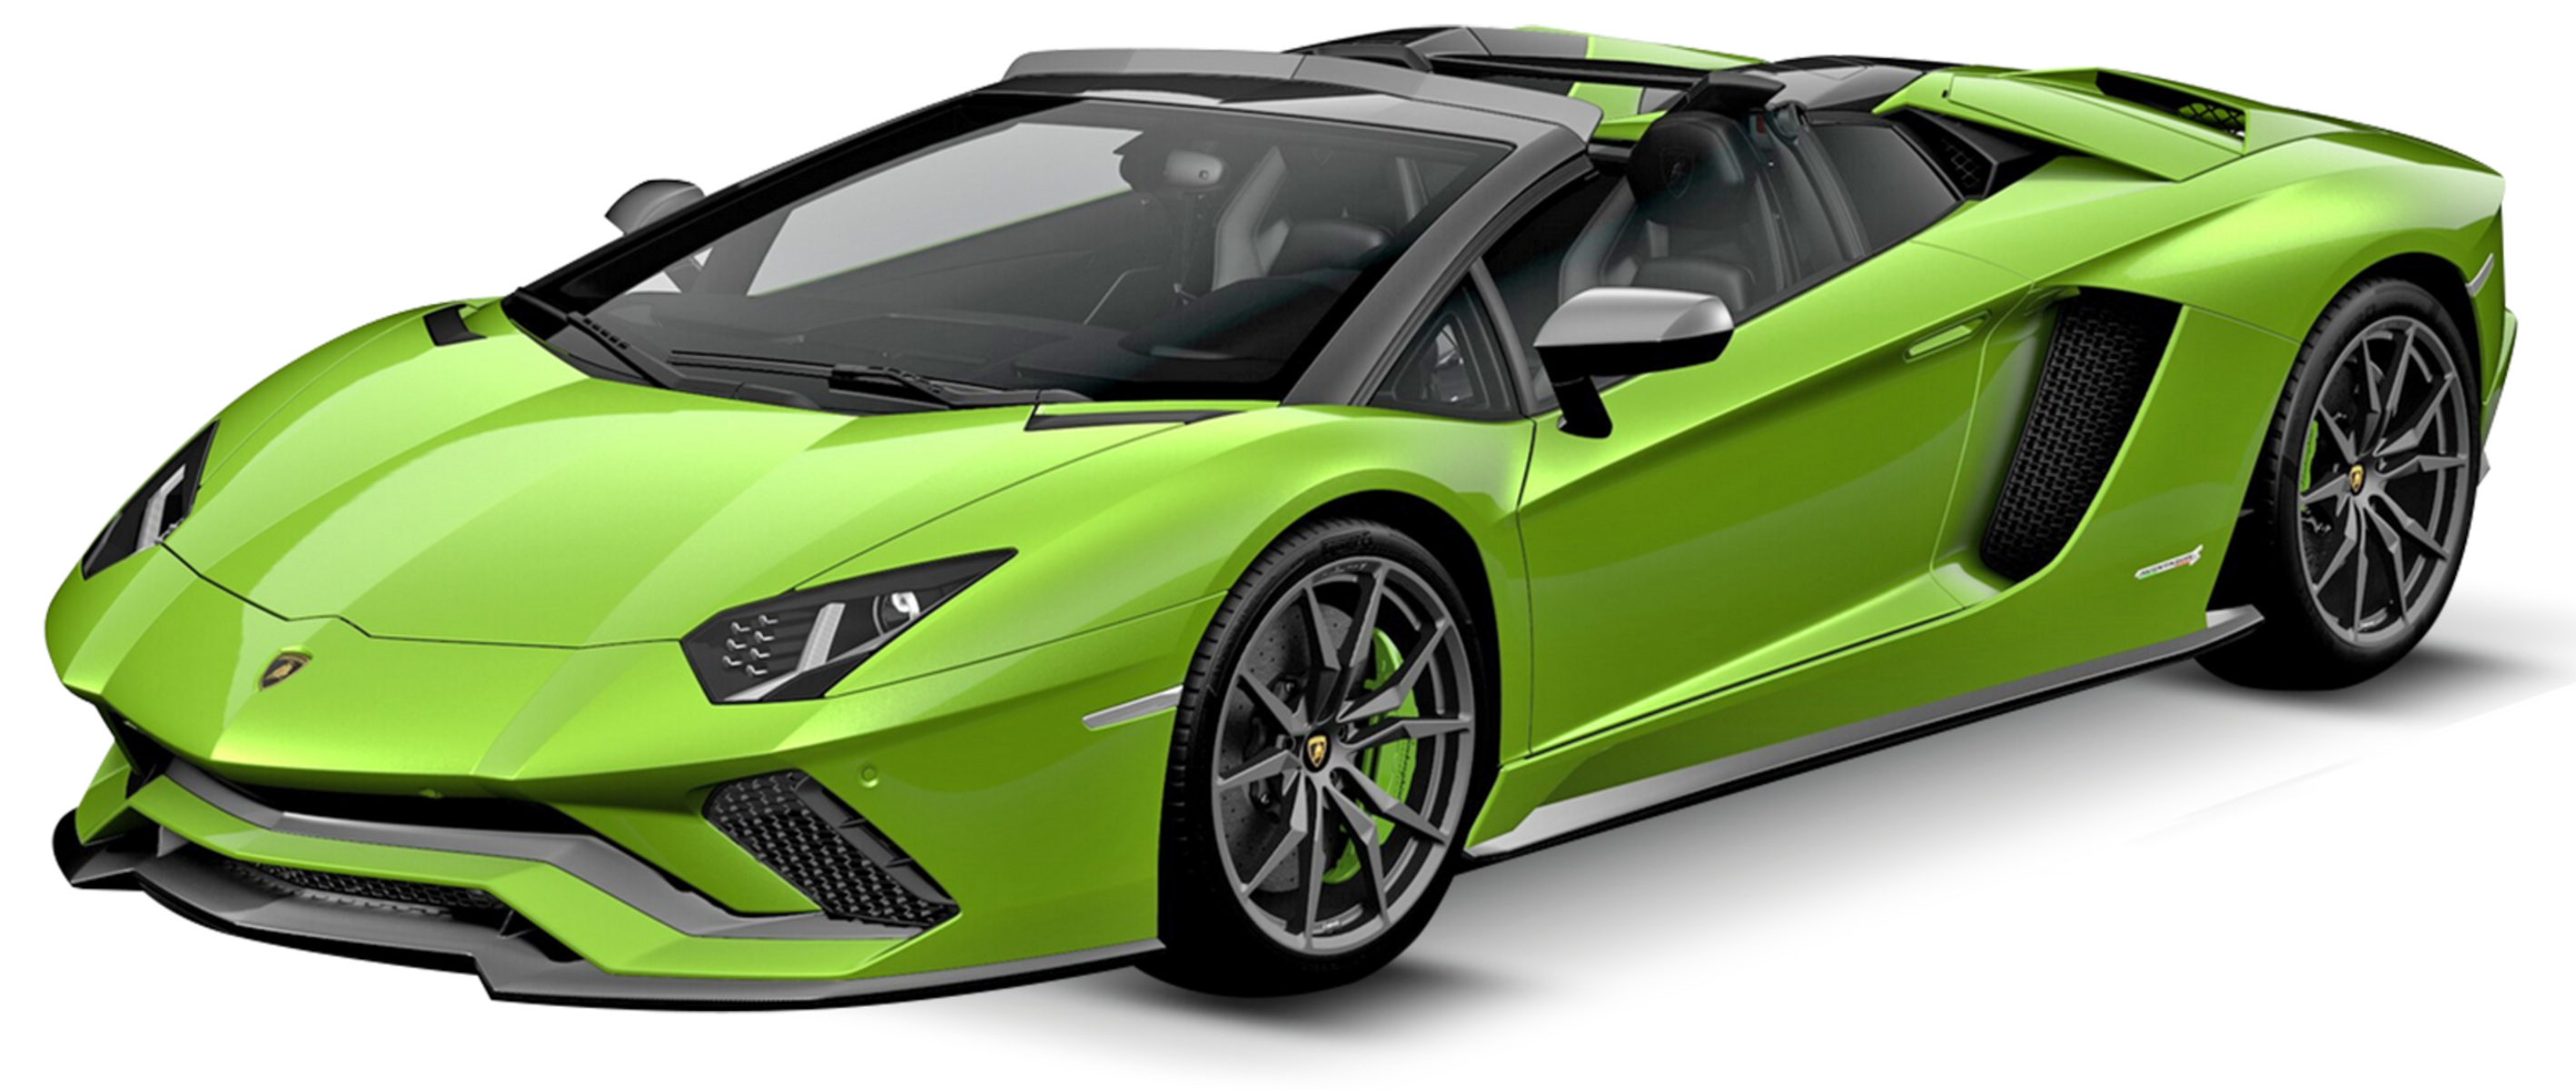 Listino Lamborghini Aventador Roadster prezzo - scheda ...